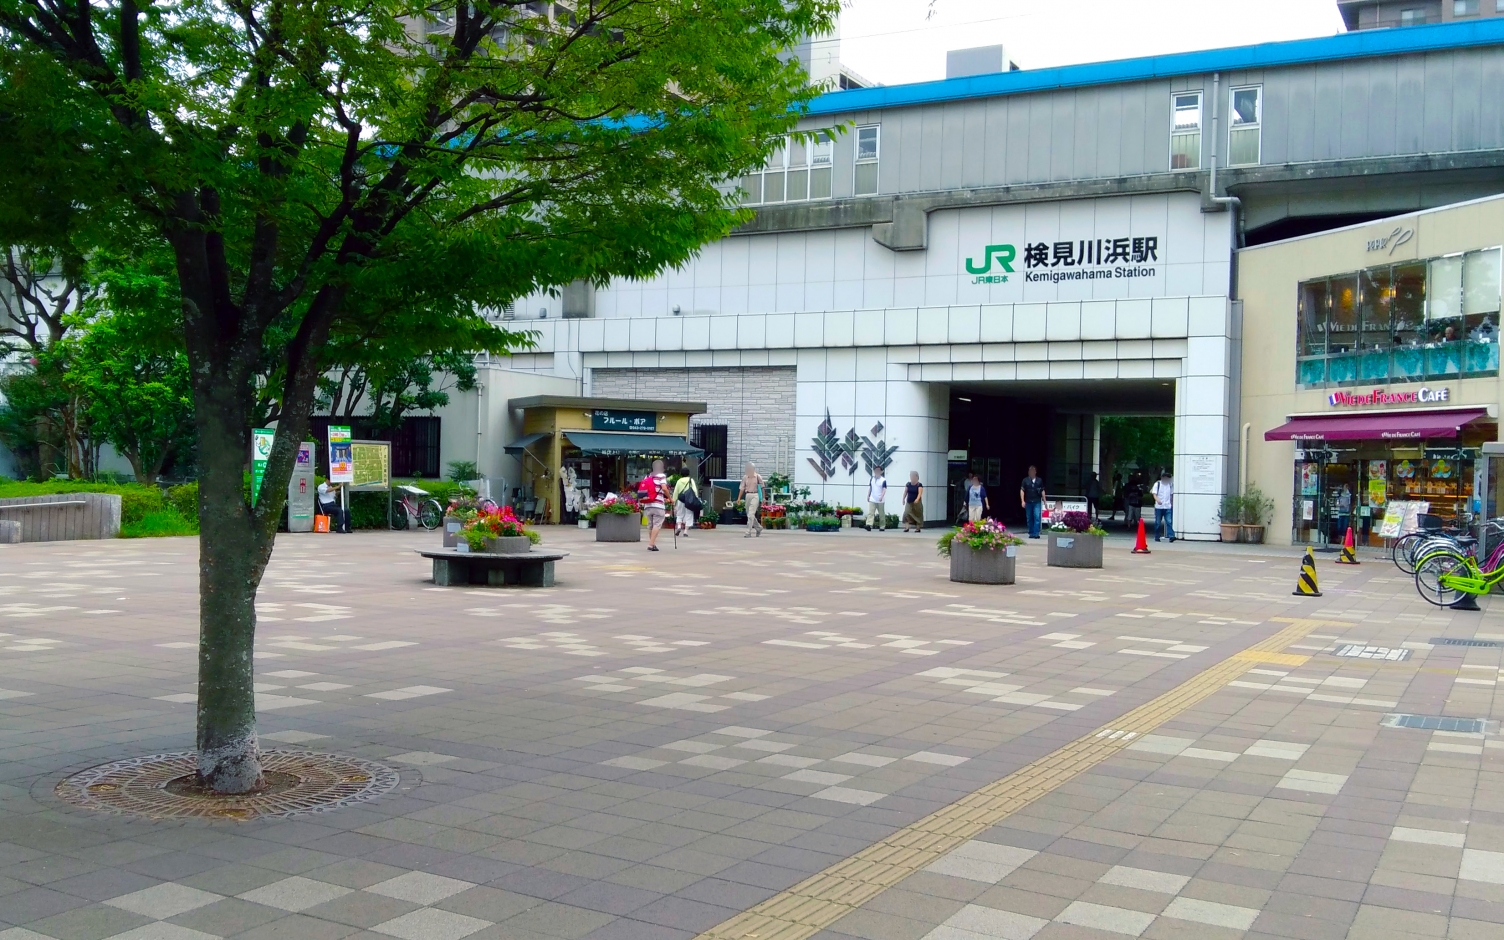 検見川浜駅（JR京葉線）近くのそろばん・珠算教室